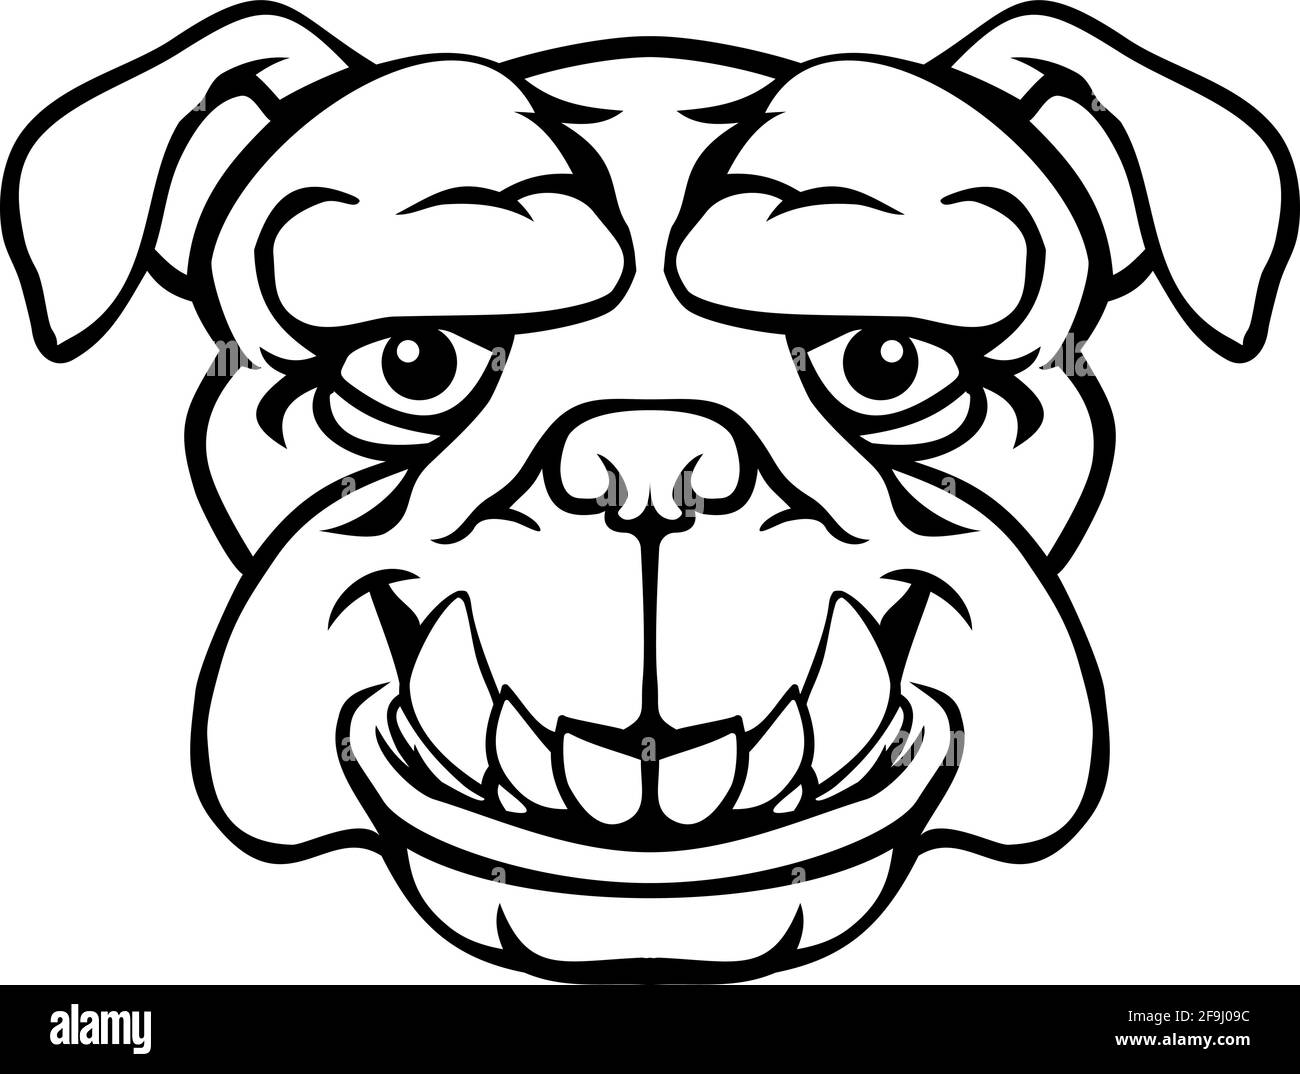 smiling bulldog cartoon